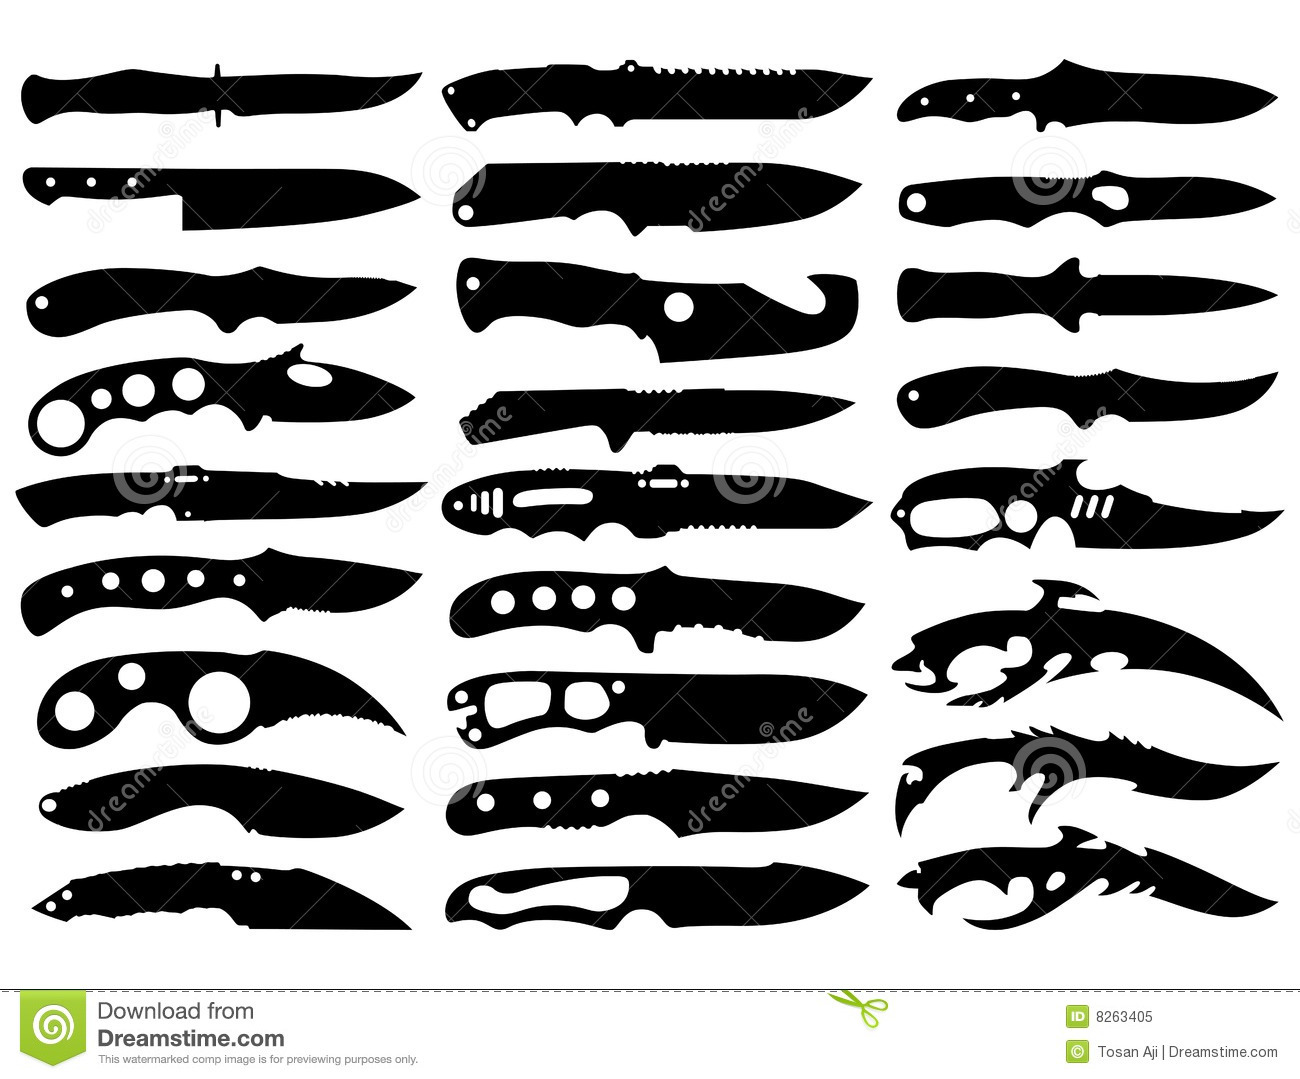 Нож керамбит из дерева: как сделать по чертежу своими руками | Ножи, Чертежи, Рисование сов